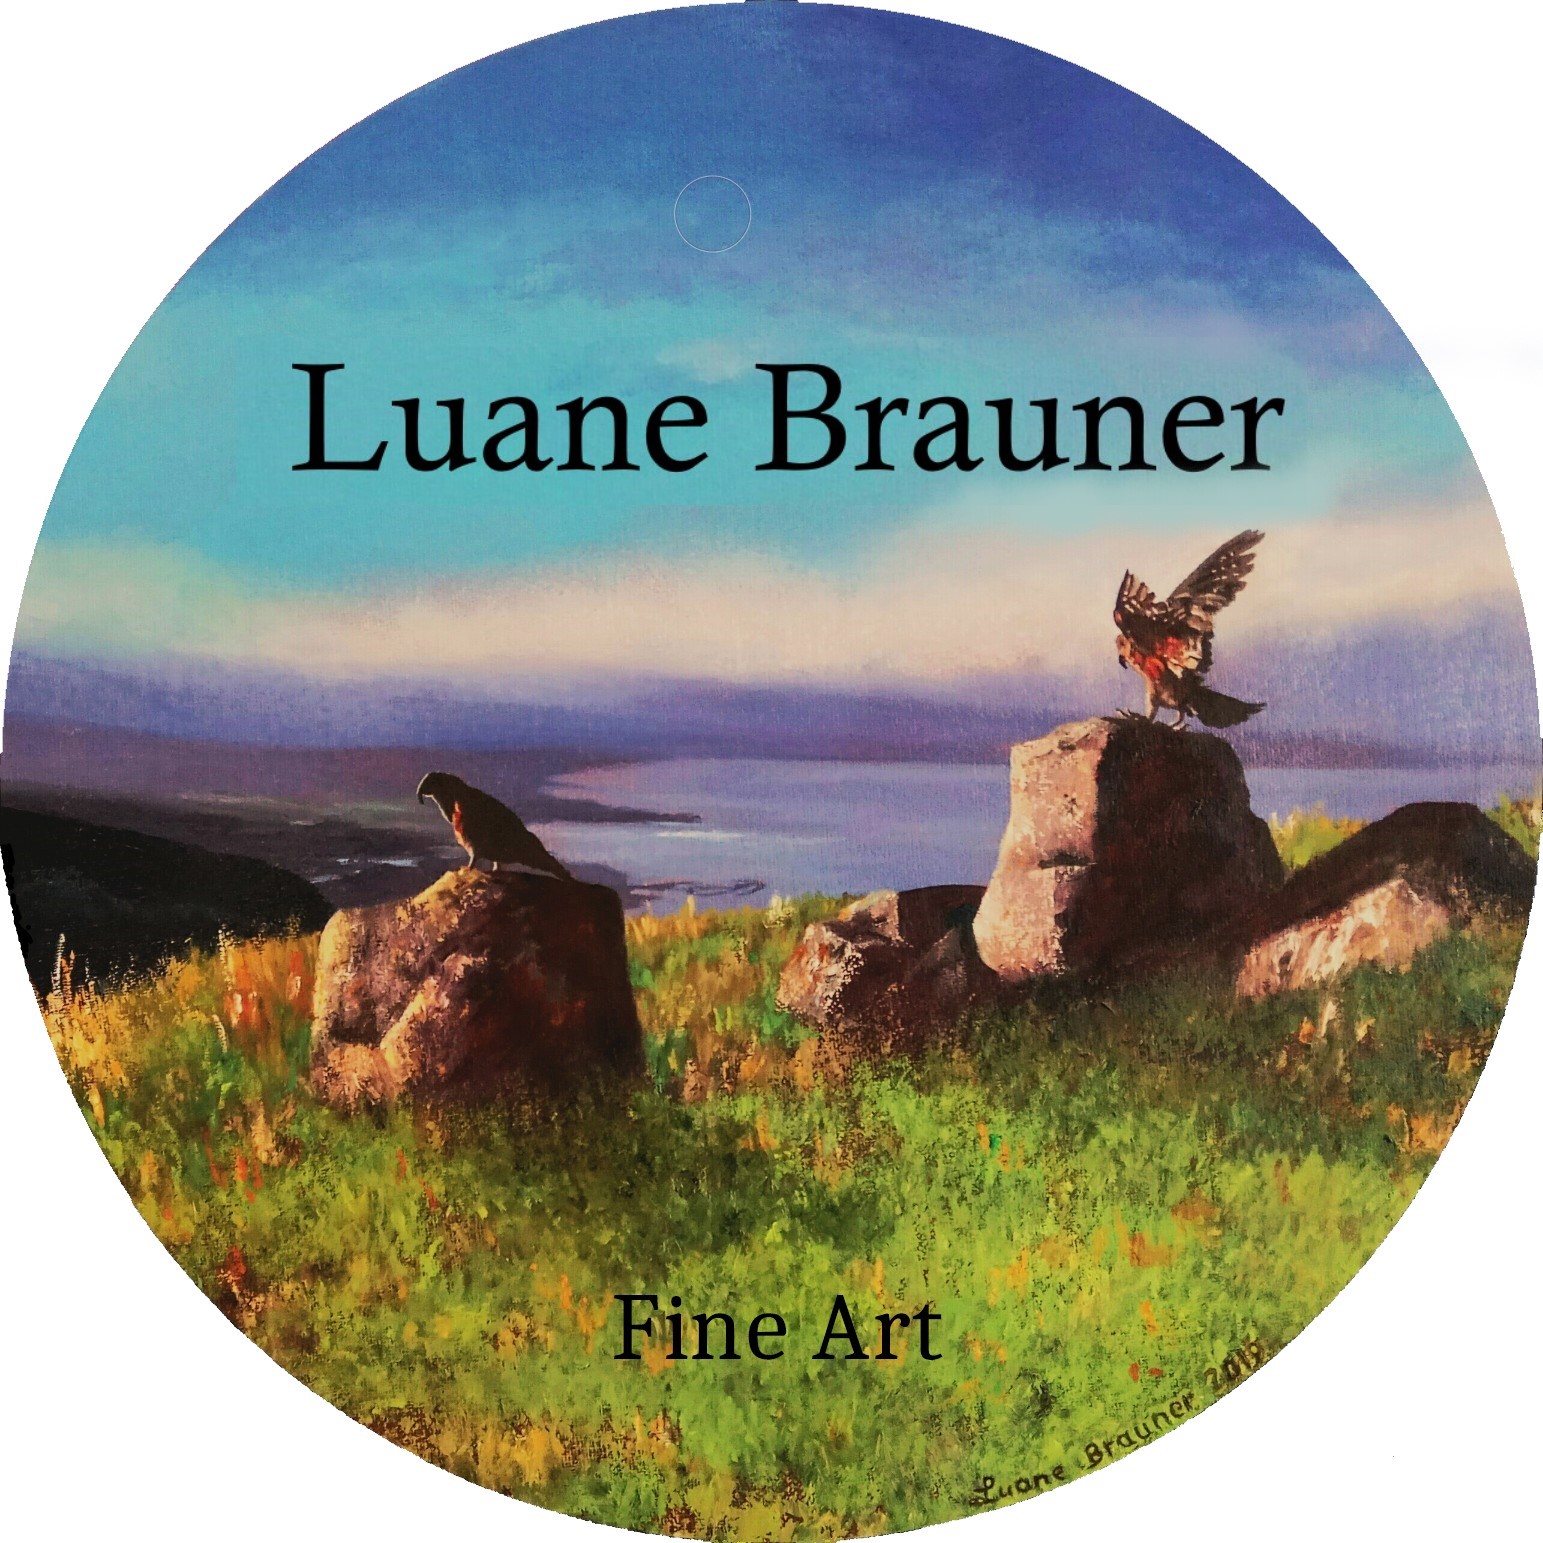 Luane Brauner - the Artist